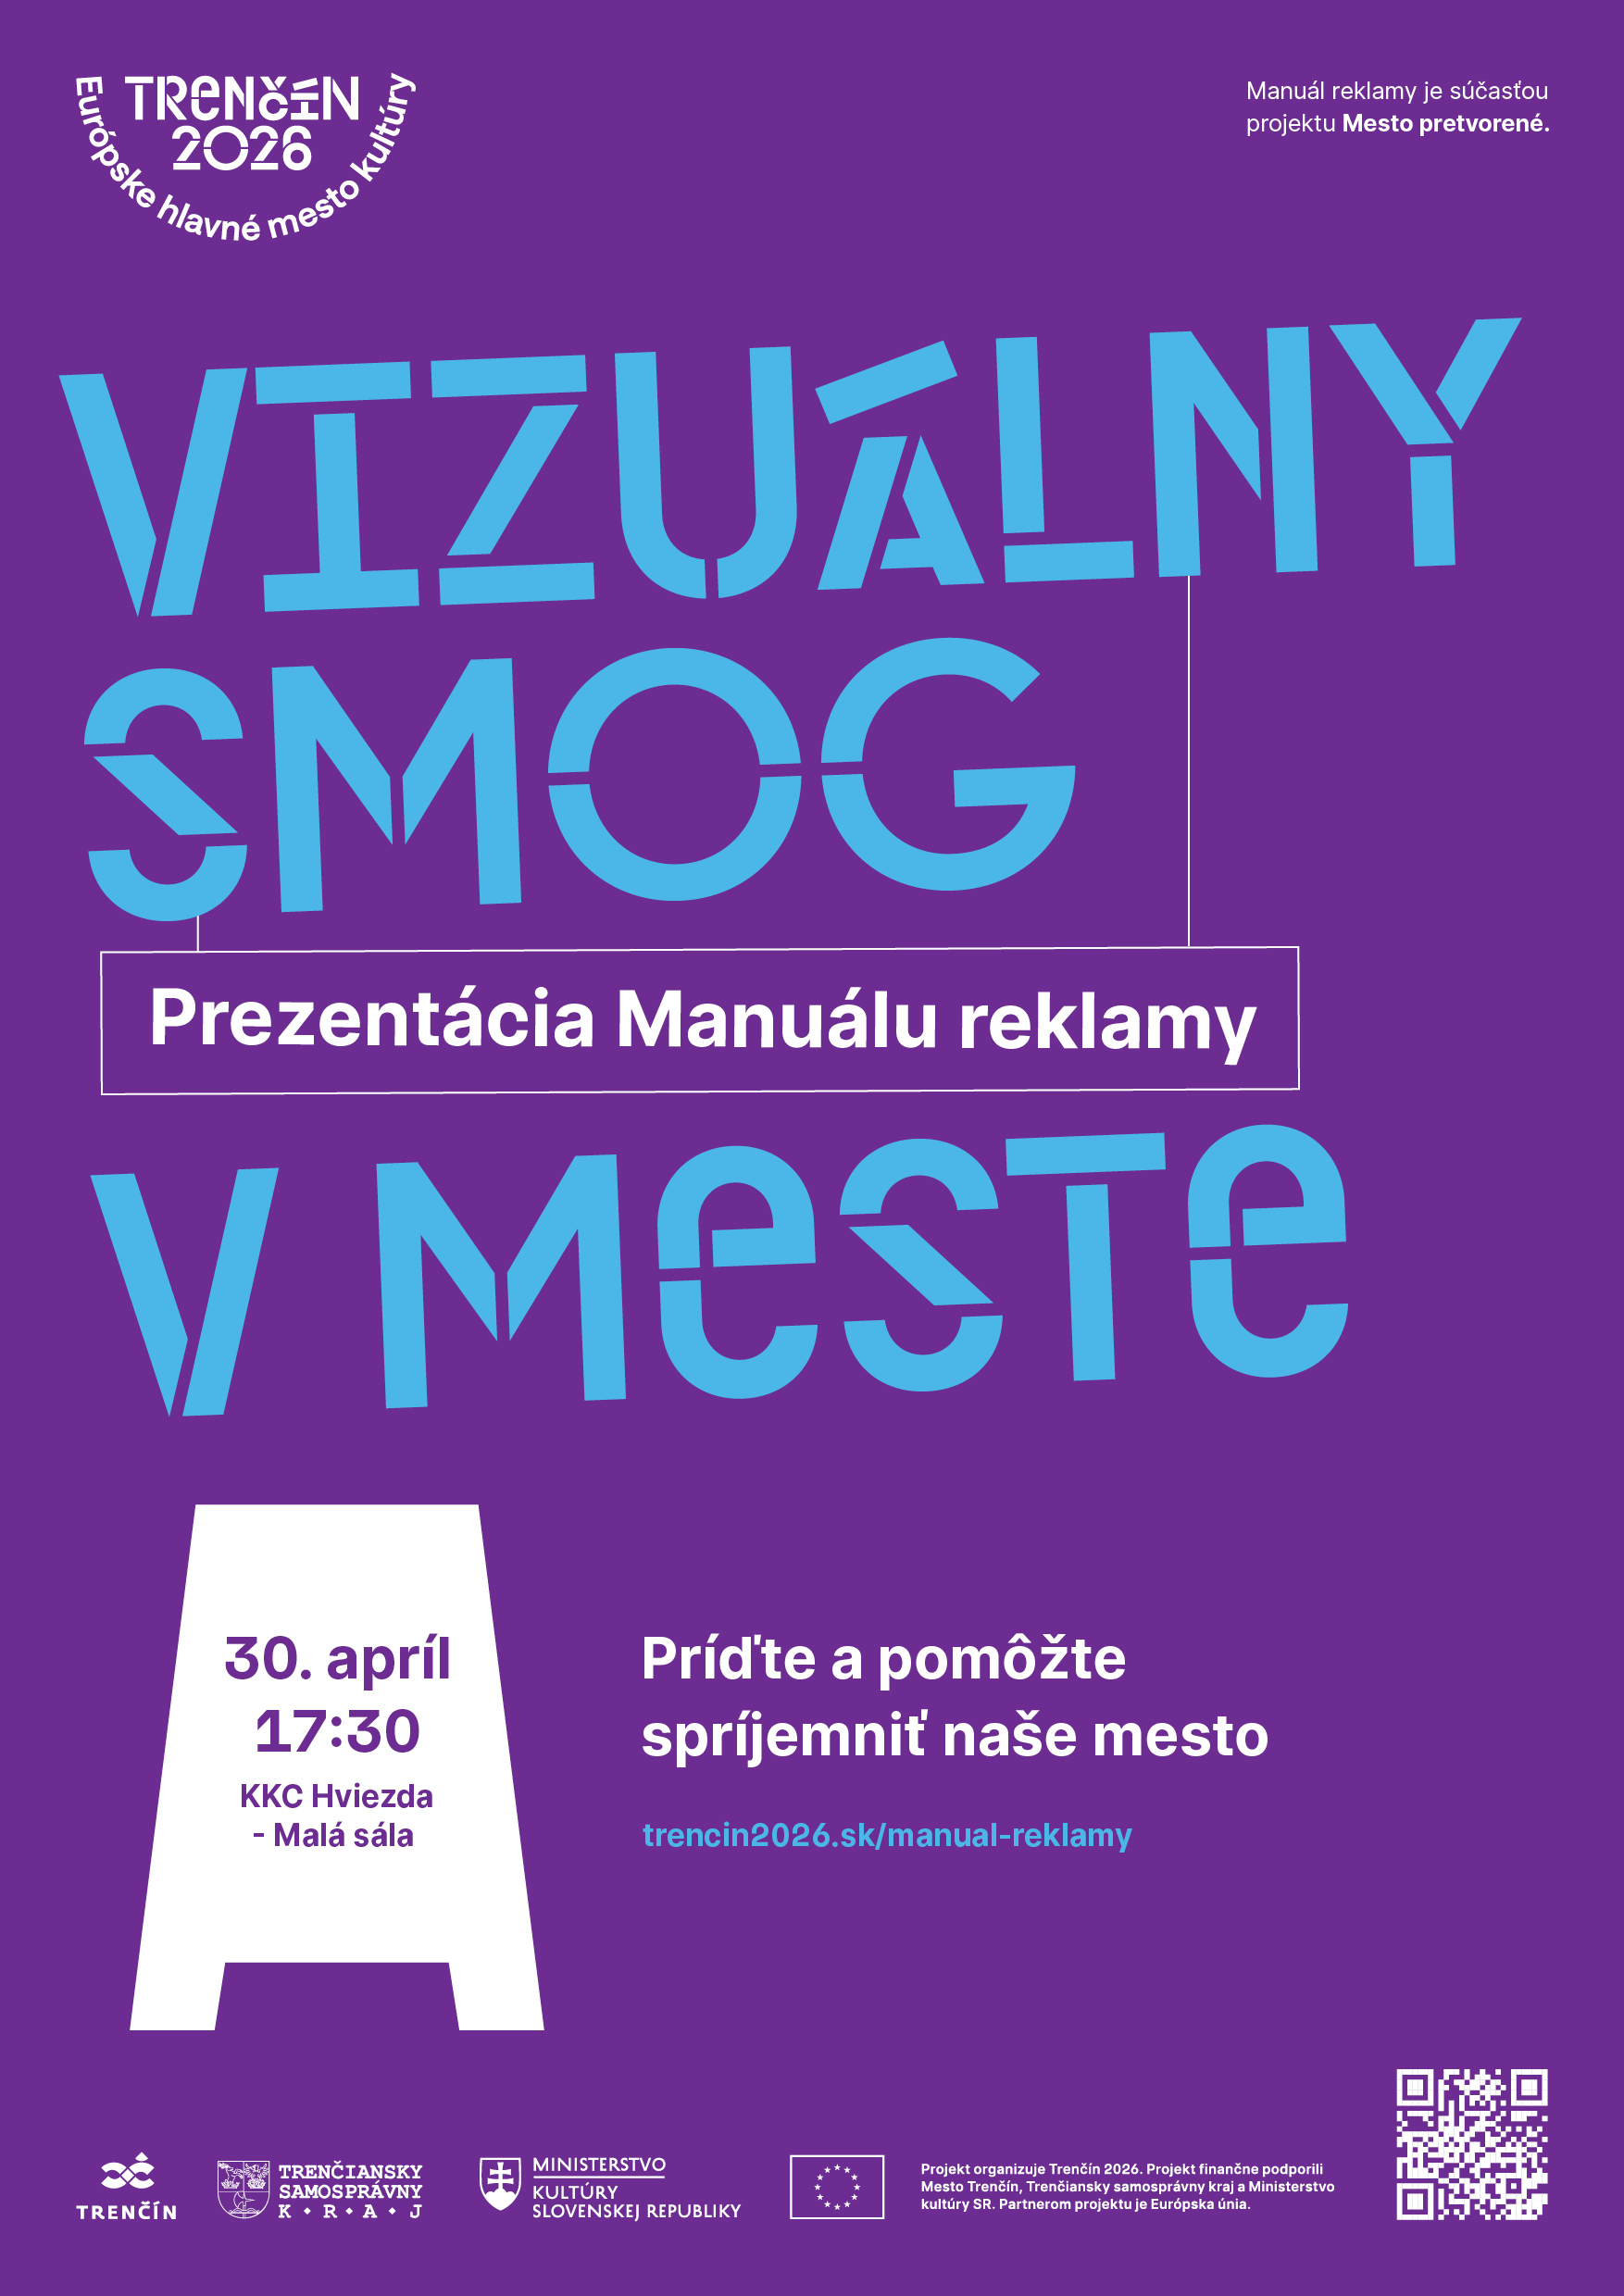 Verejná prezentácia Manuálu reklamy mesta Trenčín